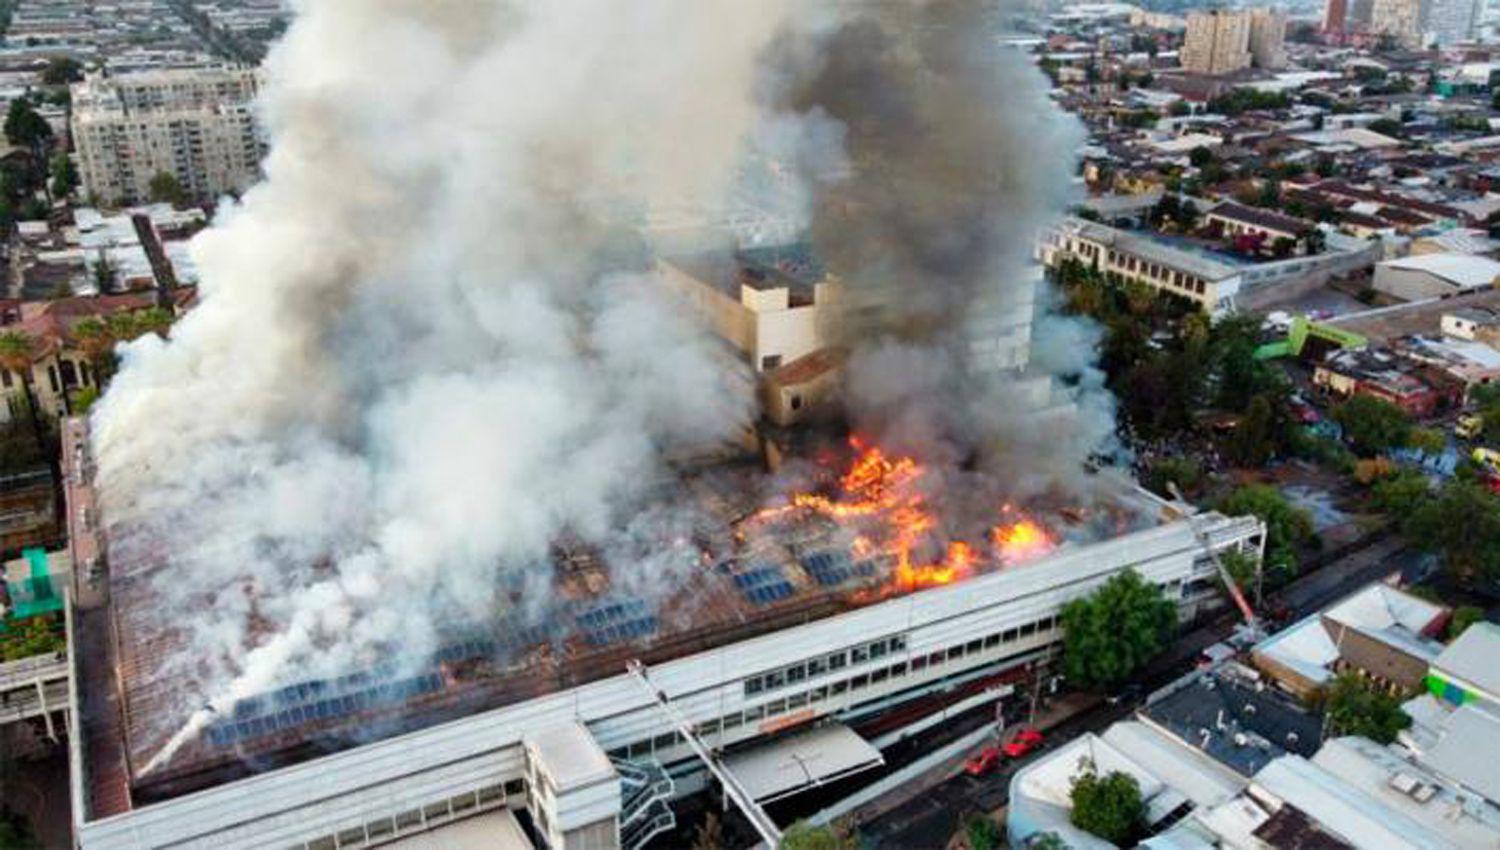 Paacutenico y evacuacioacuten en uno de los hospitales maacutes grandes de Chile por un voraz incendio